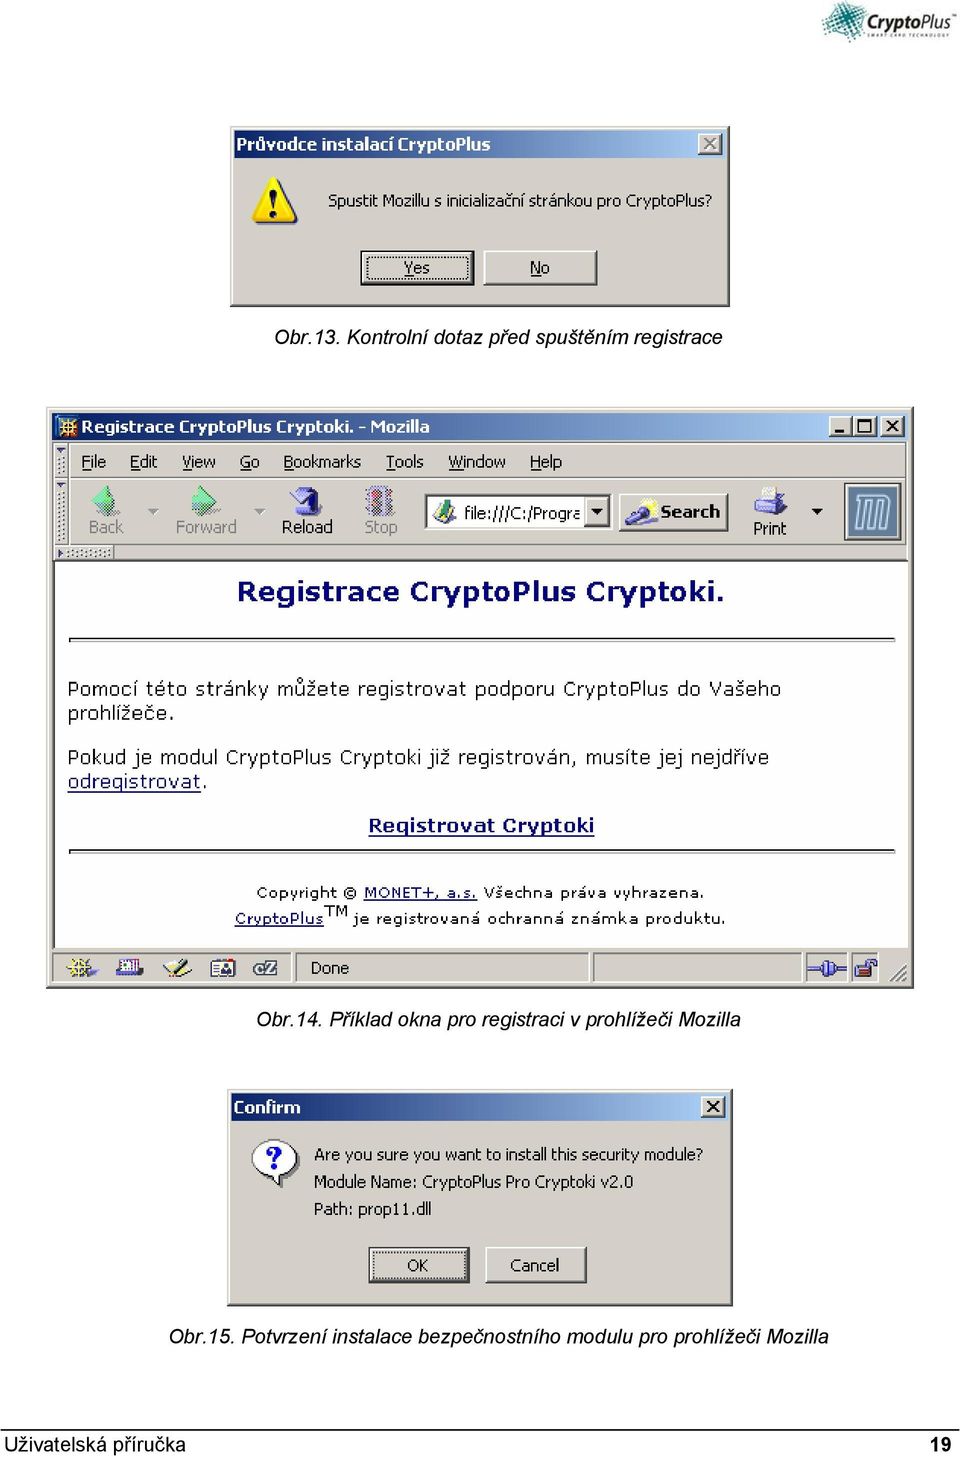 Příklad okna pro registraci v prohlížeči Mozilla